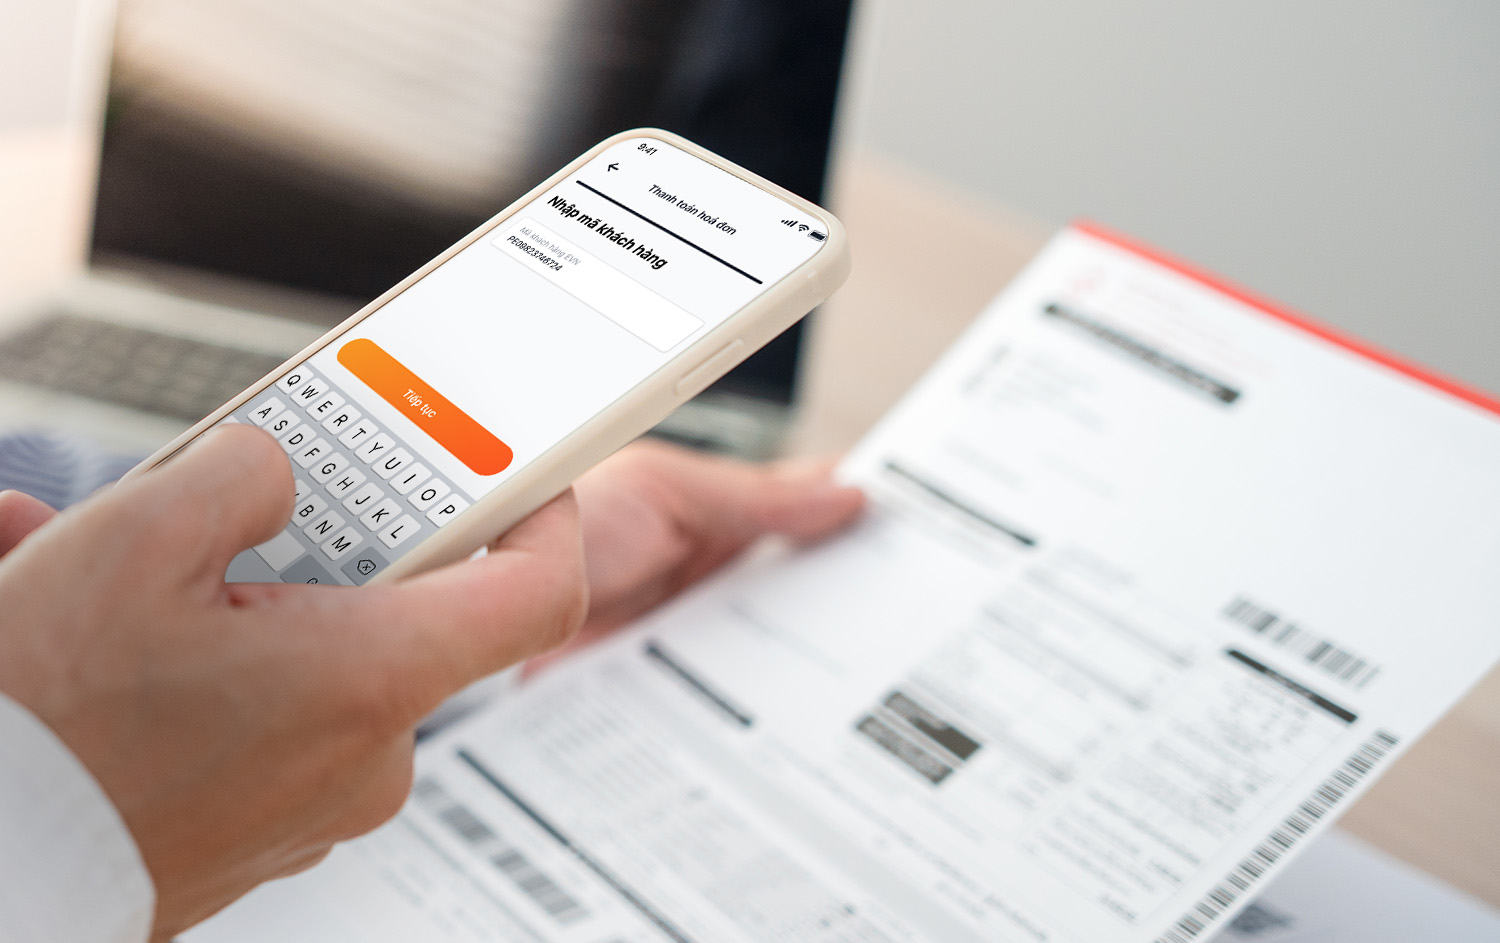 Ứng dụng Mobile Banking MyVIB 2.0 cung cấp không chỉ dịch vụ thanh toán hoá đơn mà còn có nhiều tiện ích, ưu đãi khác